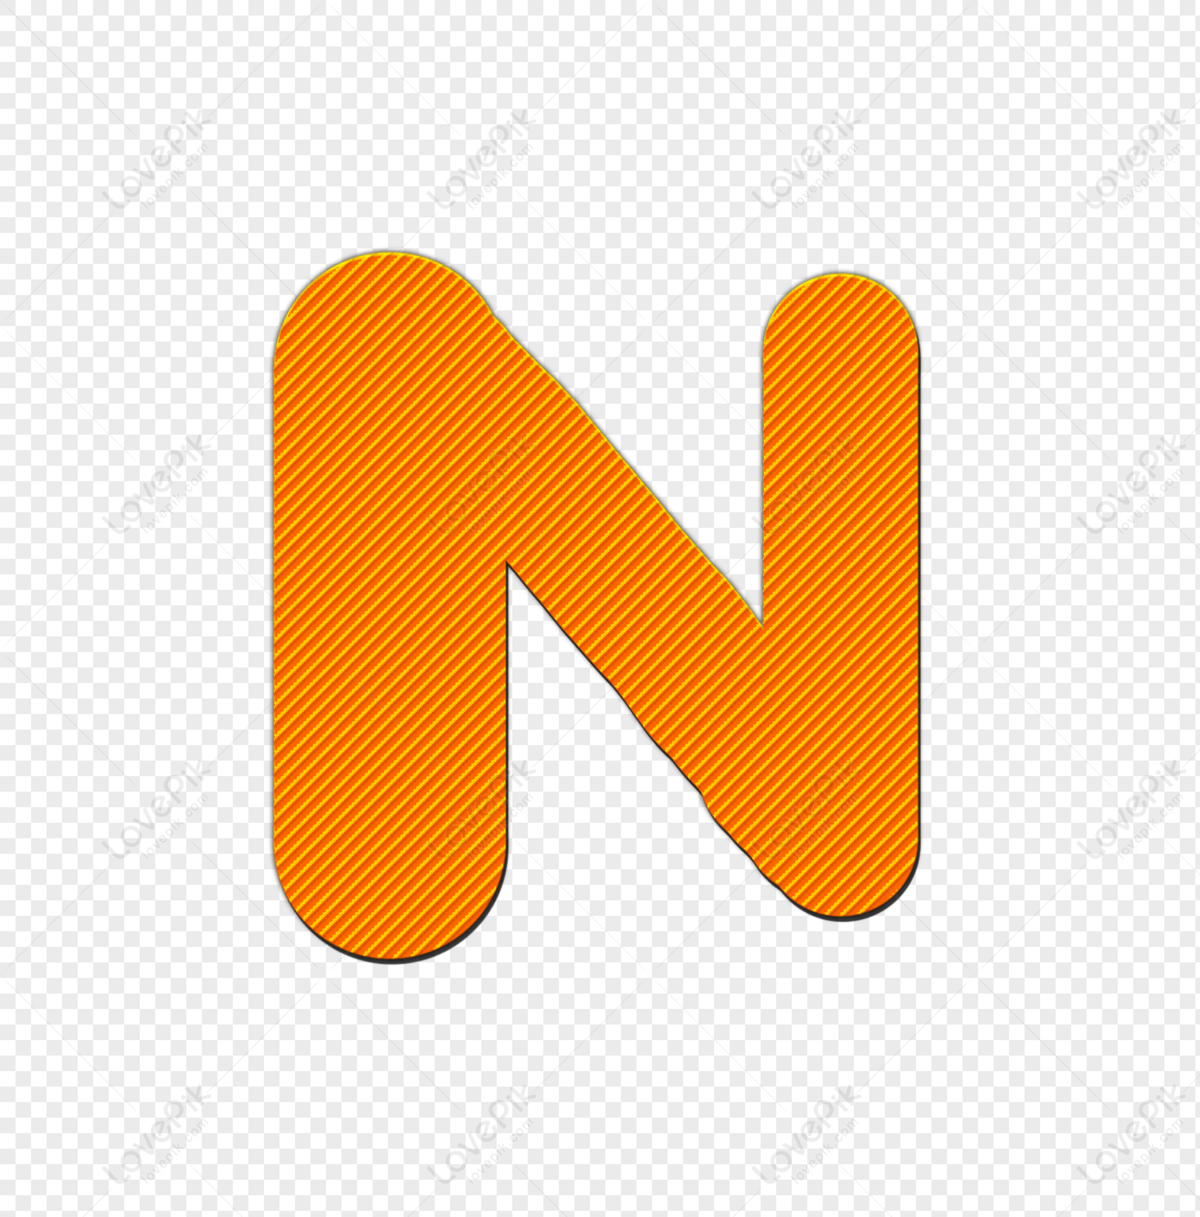 Cực Dễ ! Làm NTN để vẽ chữ N 3D NỔI TRÊN MĂT GIẤY - YouTube